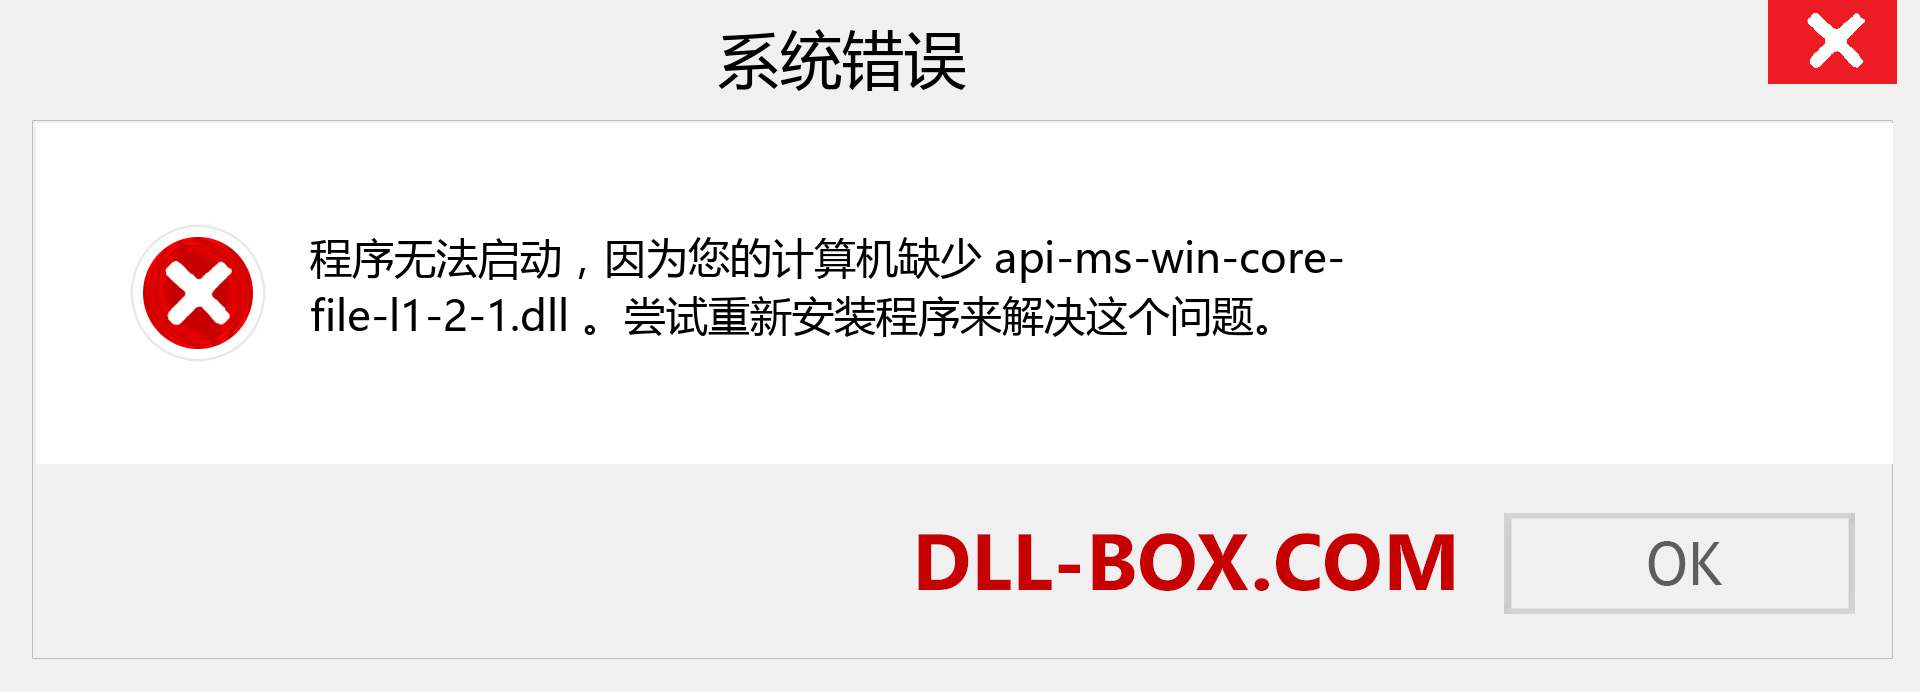 api-ms-win-core-file-l1-2-1.dll 文件丢失？。 适用于 Windows 7、8、10 的下载 - 修复 Windows、照片、图像上的 api-ms-win-core-file-l1-2-1 dll 丢失错误